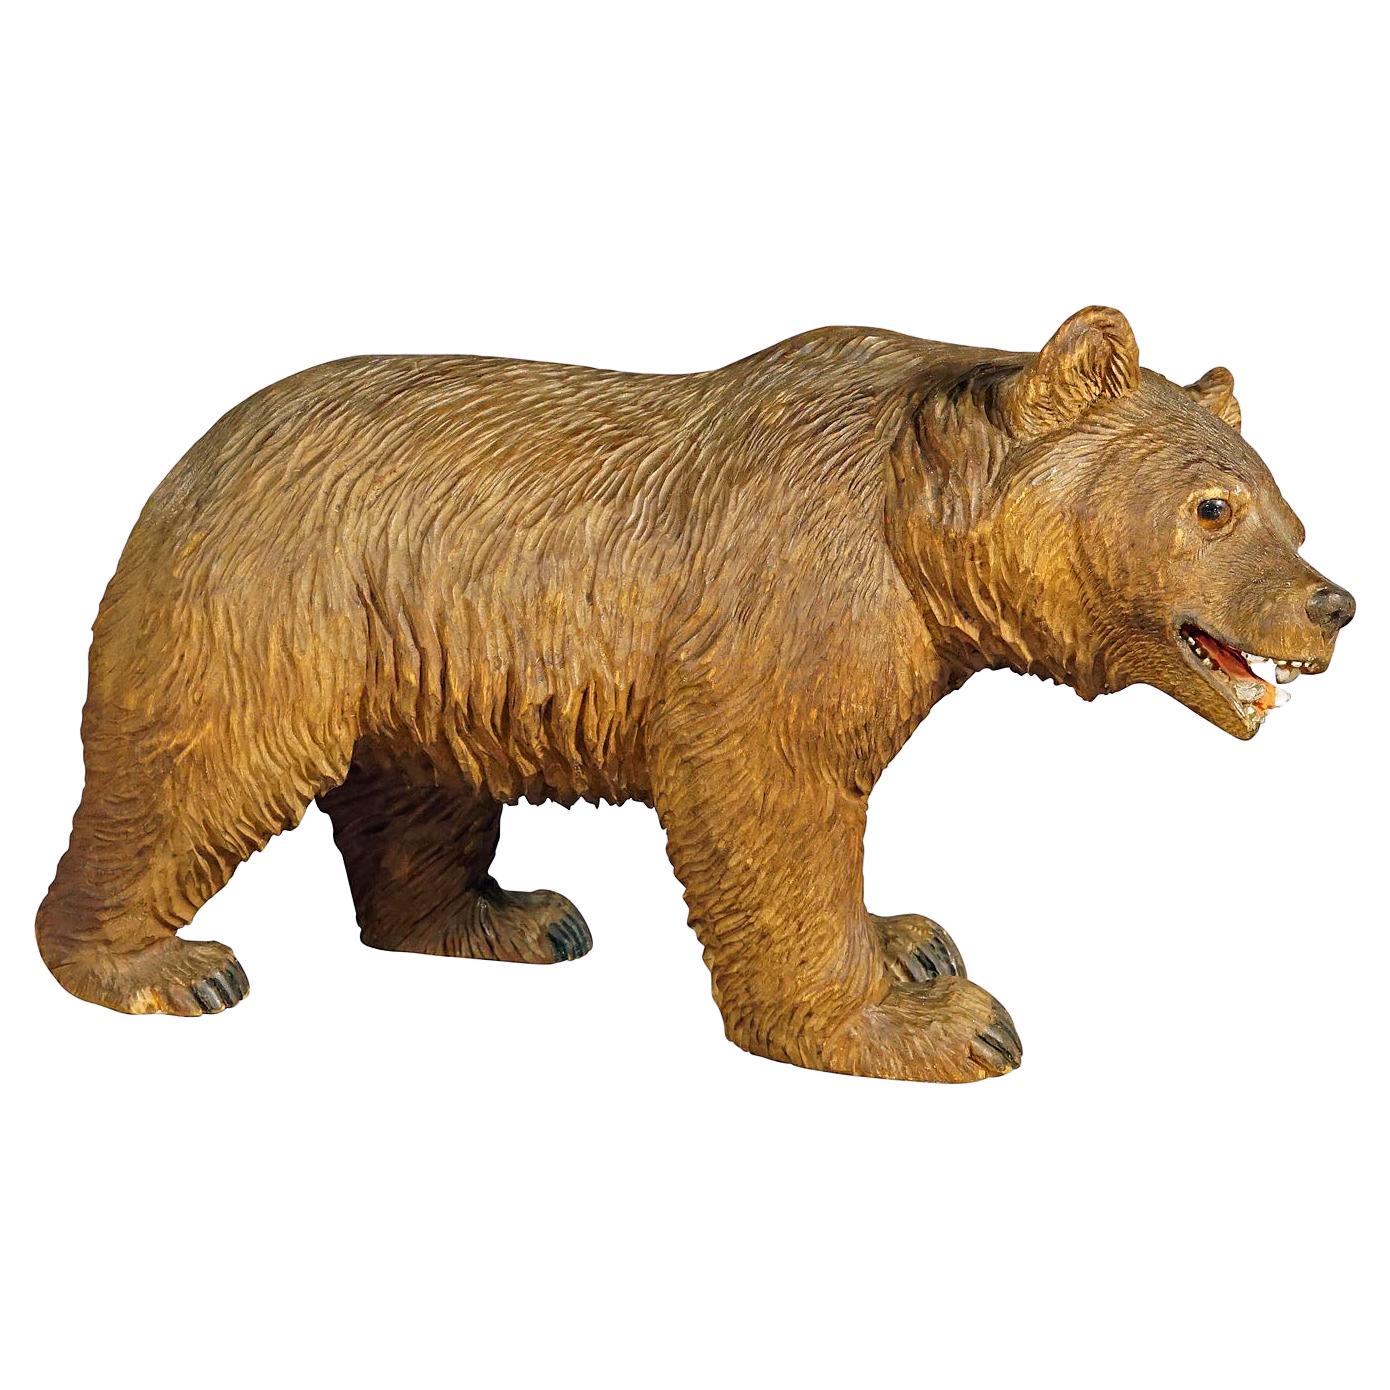 Statue en bois d'un ours marcheur sculptée à la main en Suisse, vers les années 1930